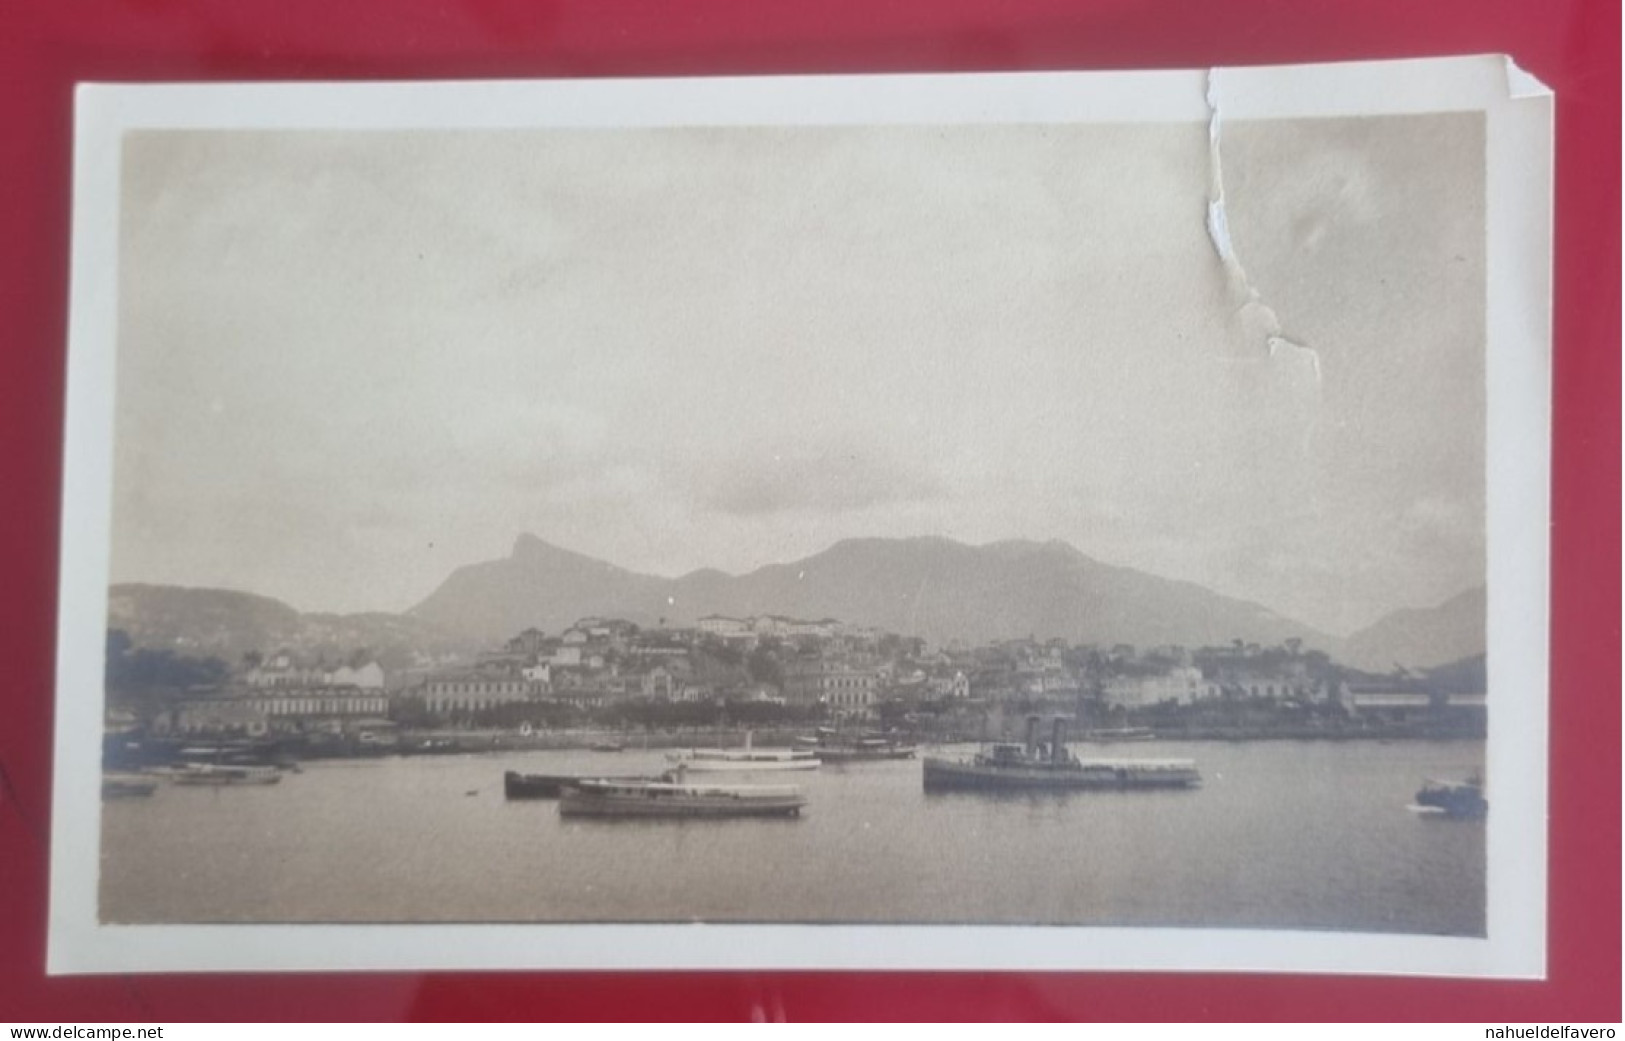 PH - Ph Original - Grands Navires Quittant La Ville De Rio De Janeiro, 1925 - Bateaux